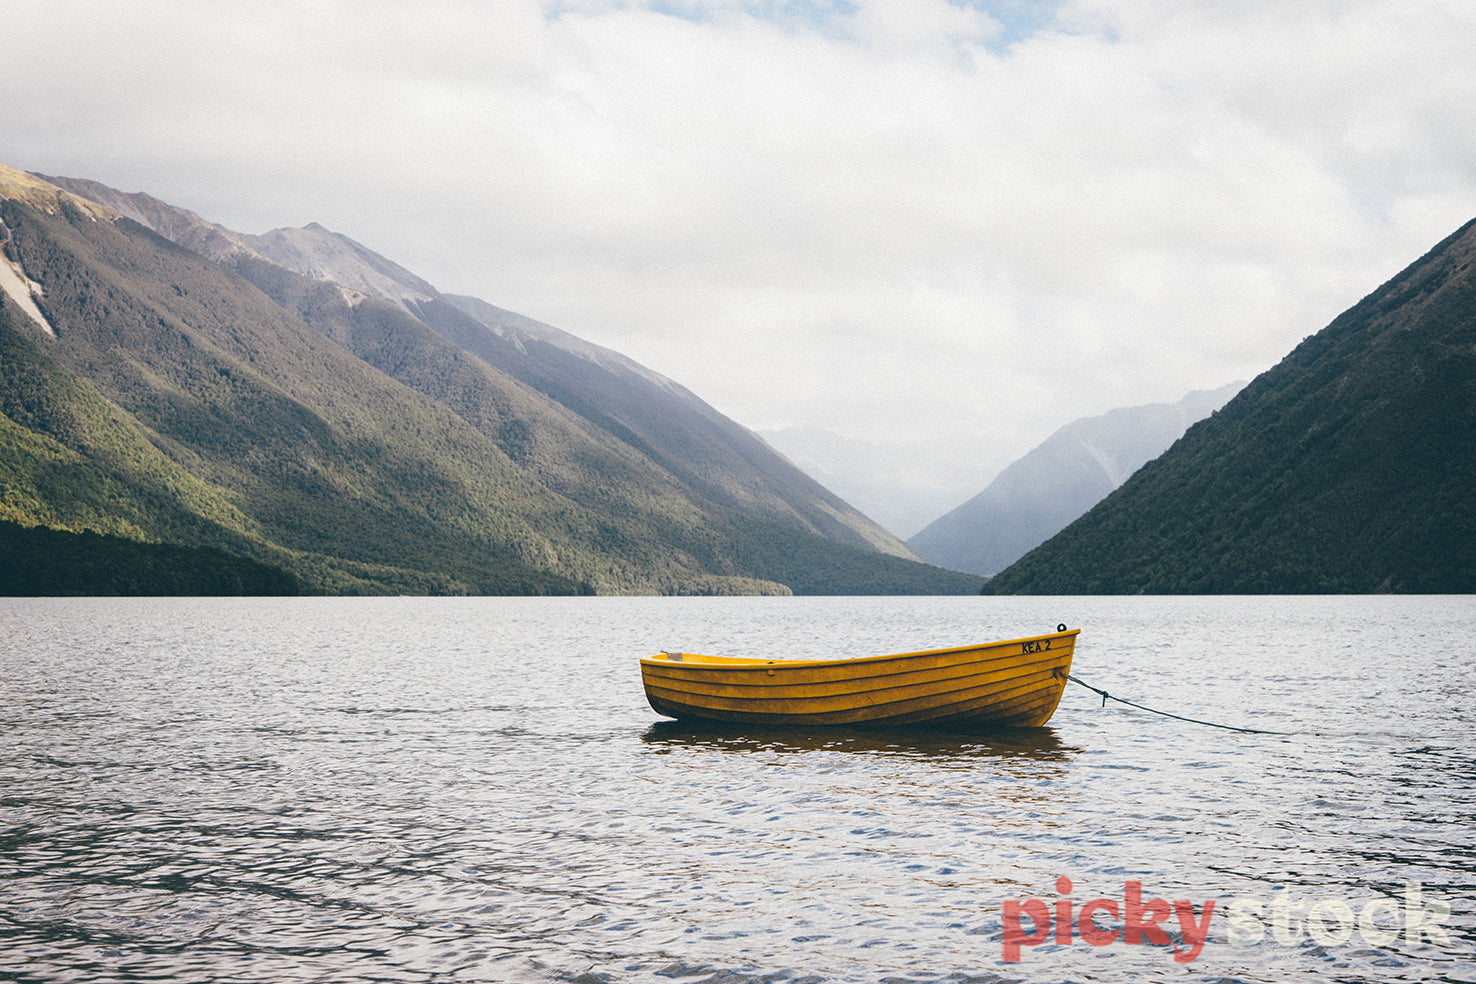 Yellow boat on Lake Rotoiti